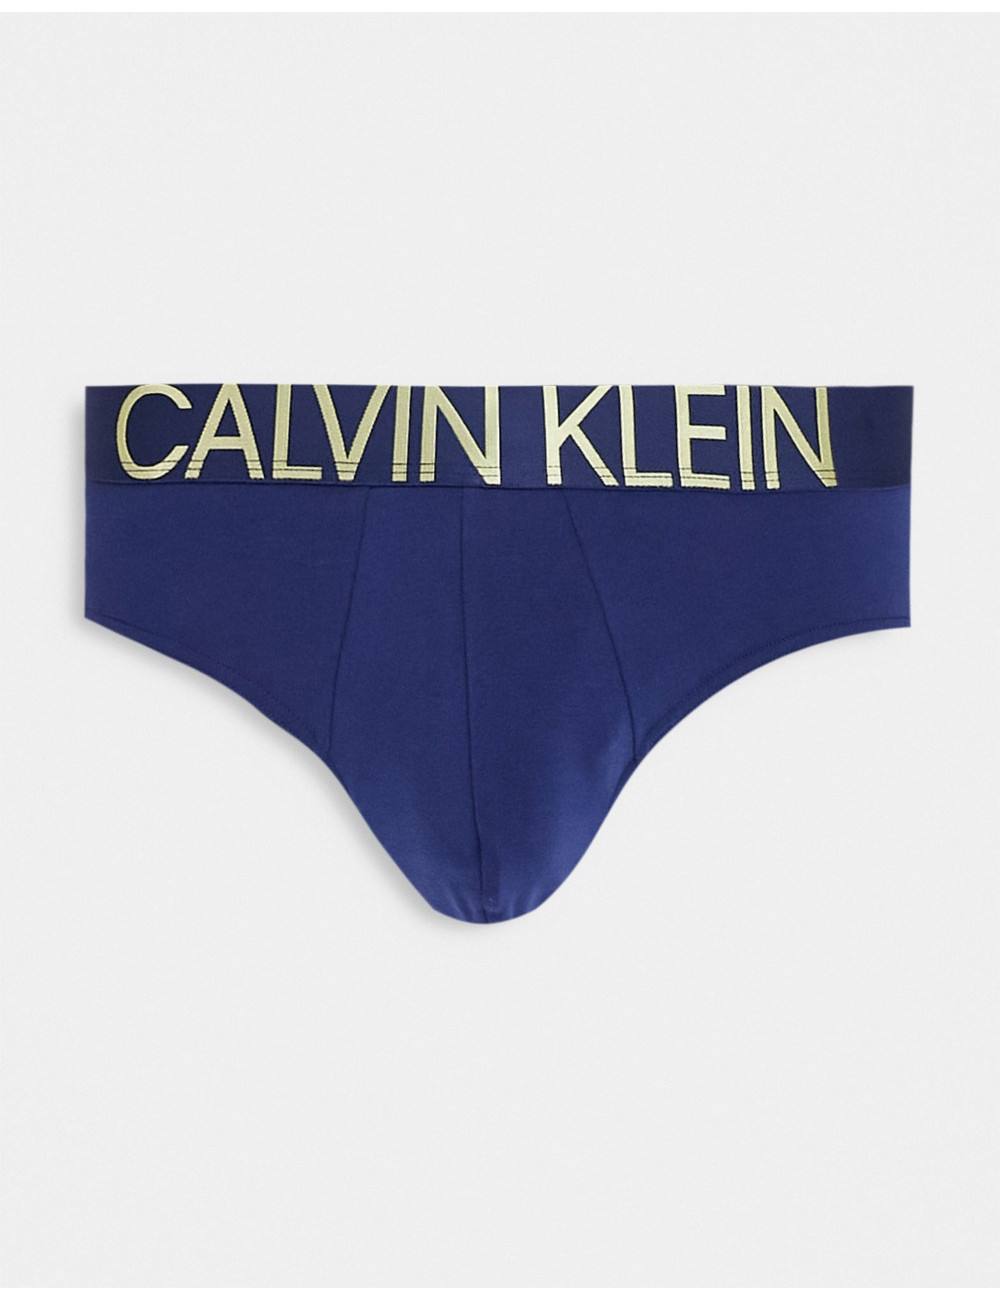 Calvin Klein briefs in blue